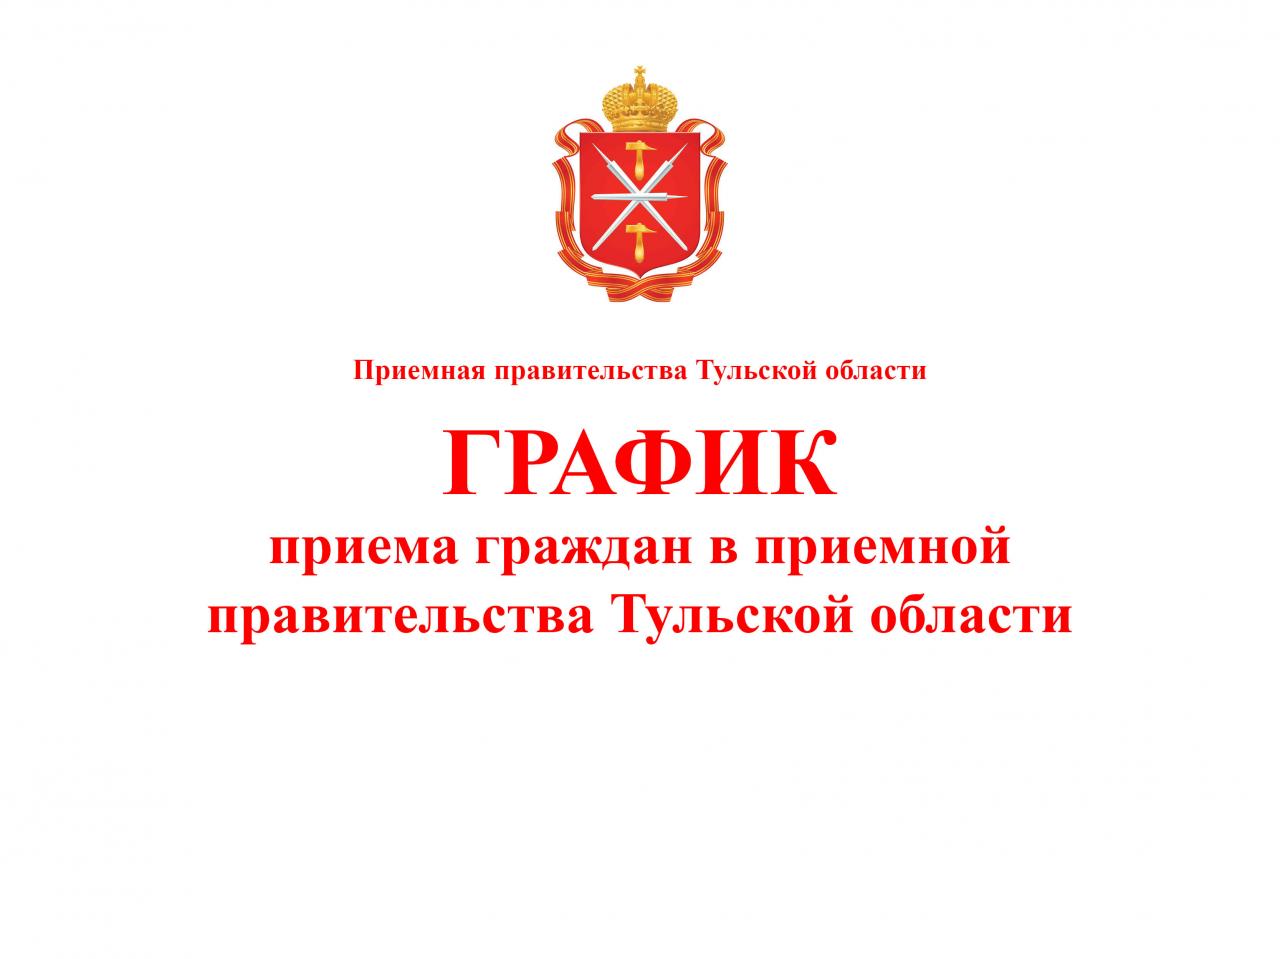 ГРАФИК  приёма граждан в приёмной правительства Тульской области на февраль 2020 года